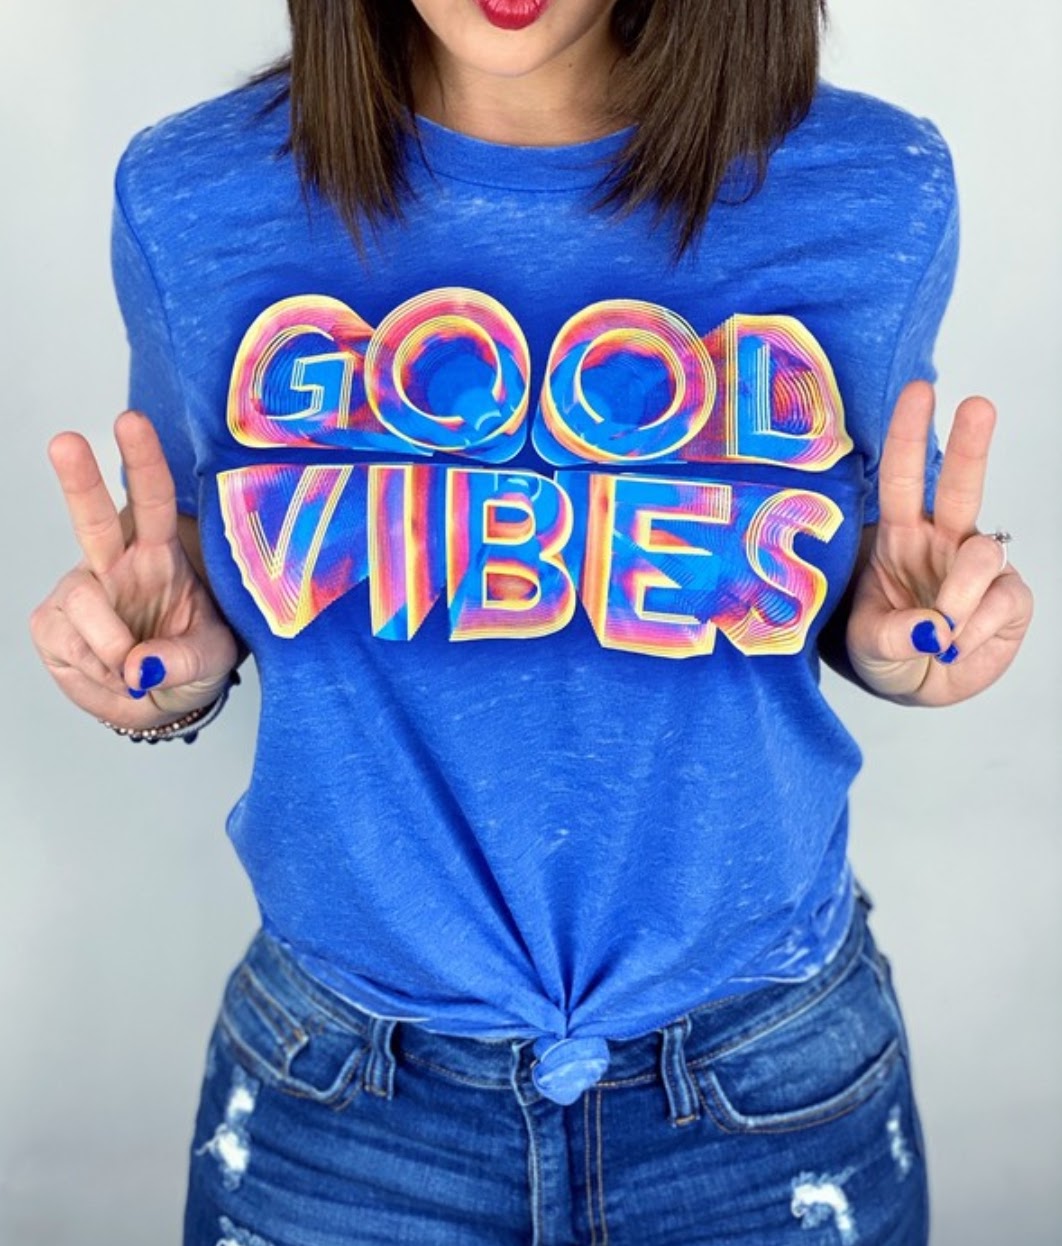 Good vibes tshirts